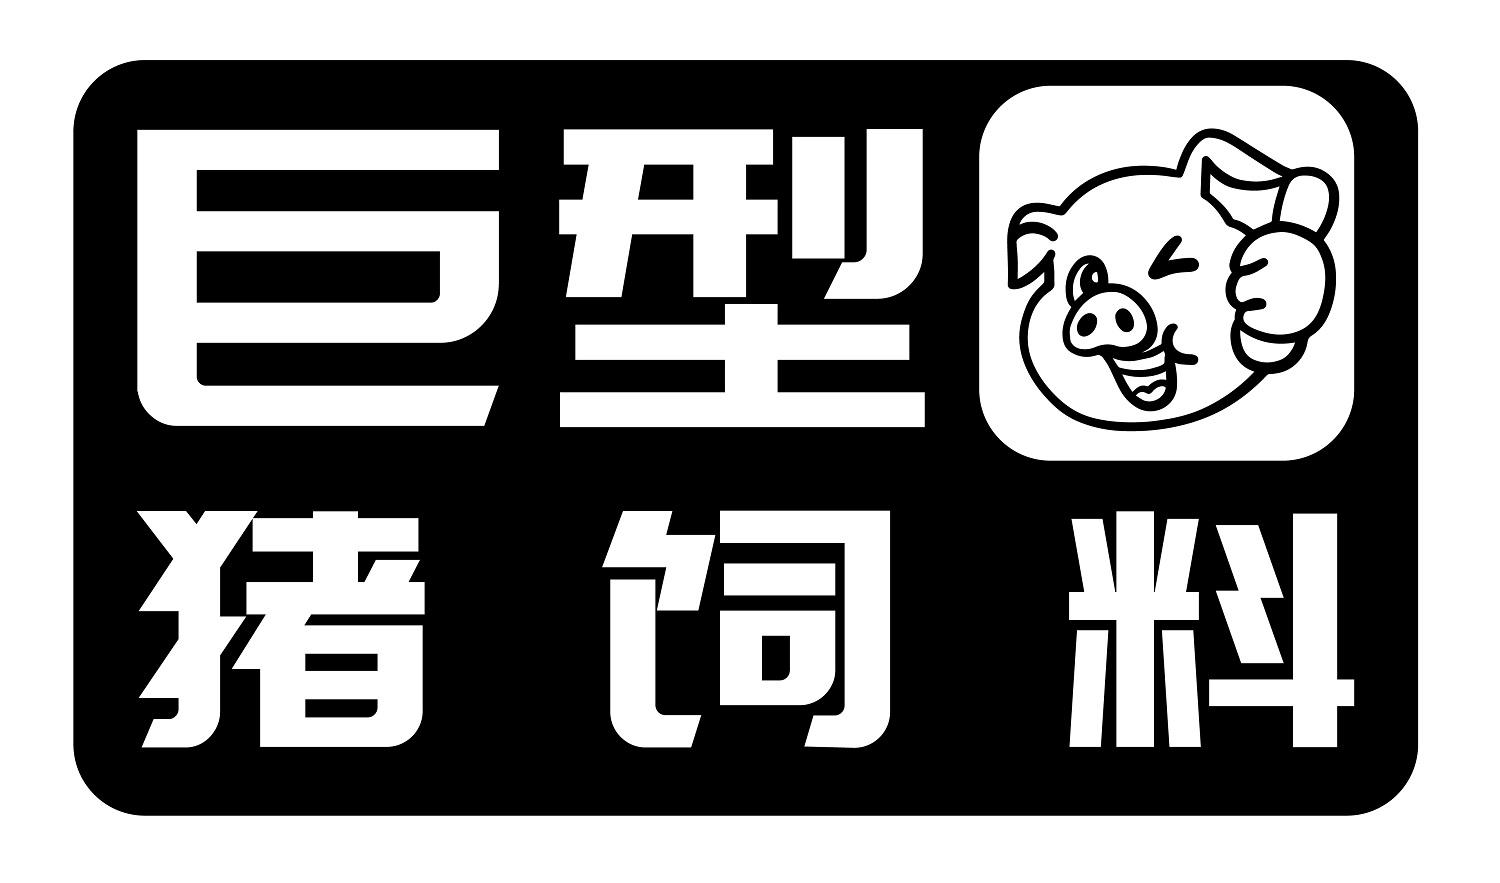 商标文字巨型猪饲料商标注册号 48861049,商标申请人苏州太景贸易有限